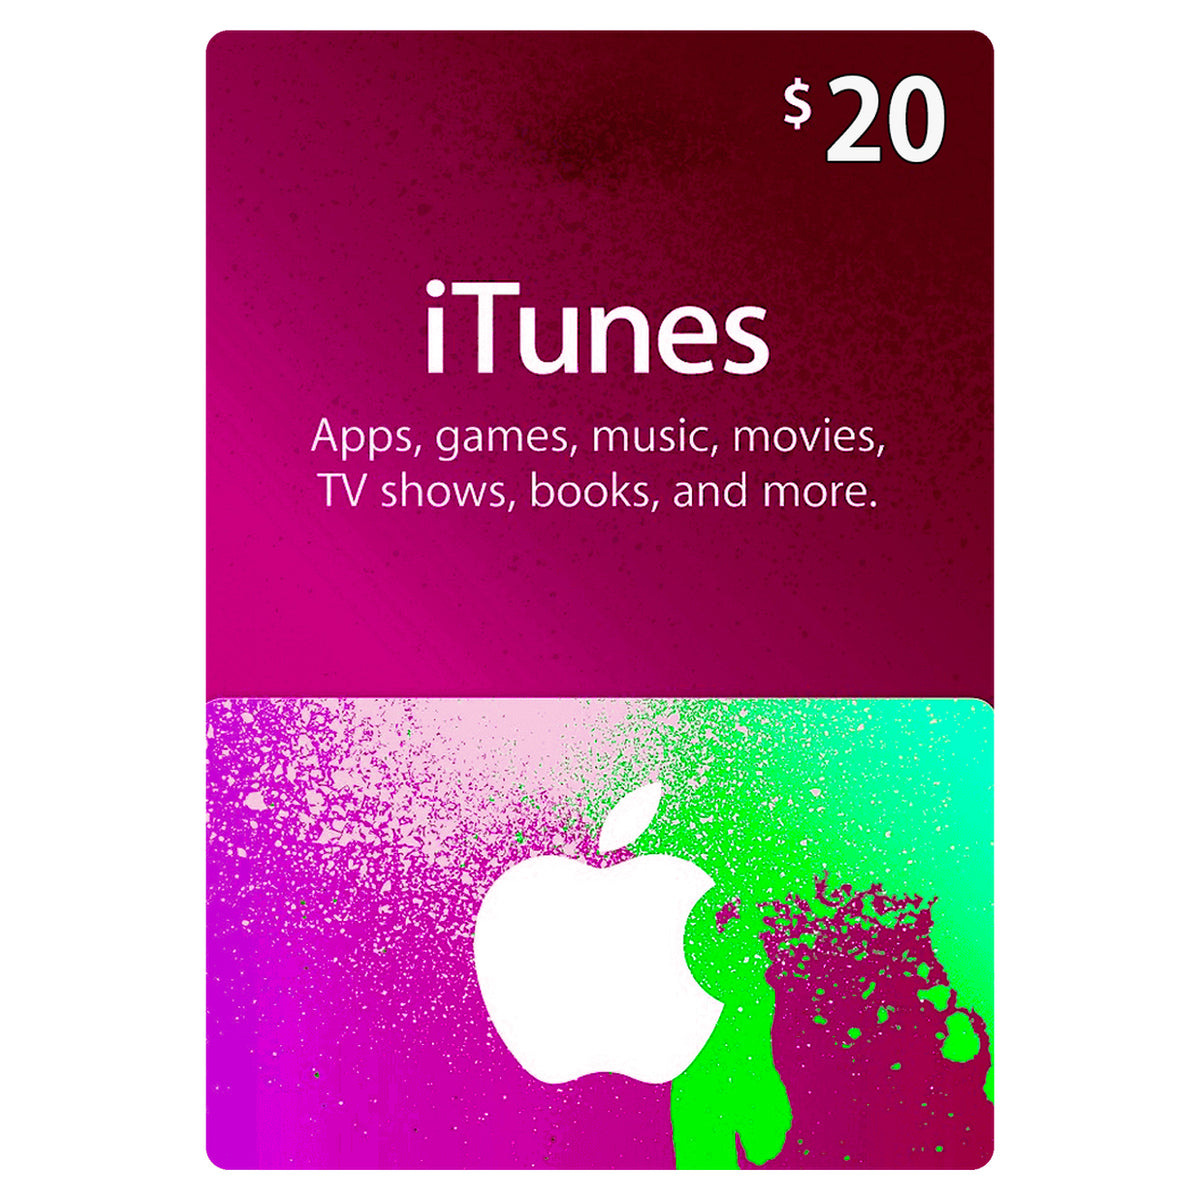 Tarjeta iTunes $20 + cargo por servicio - Multimax